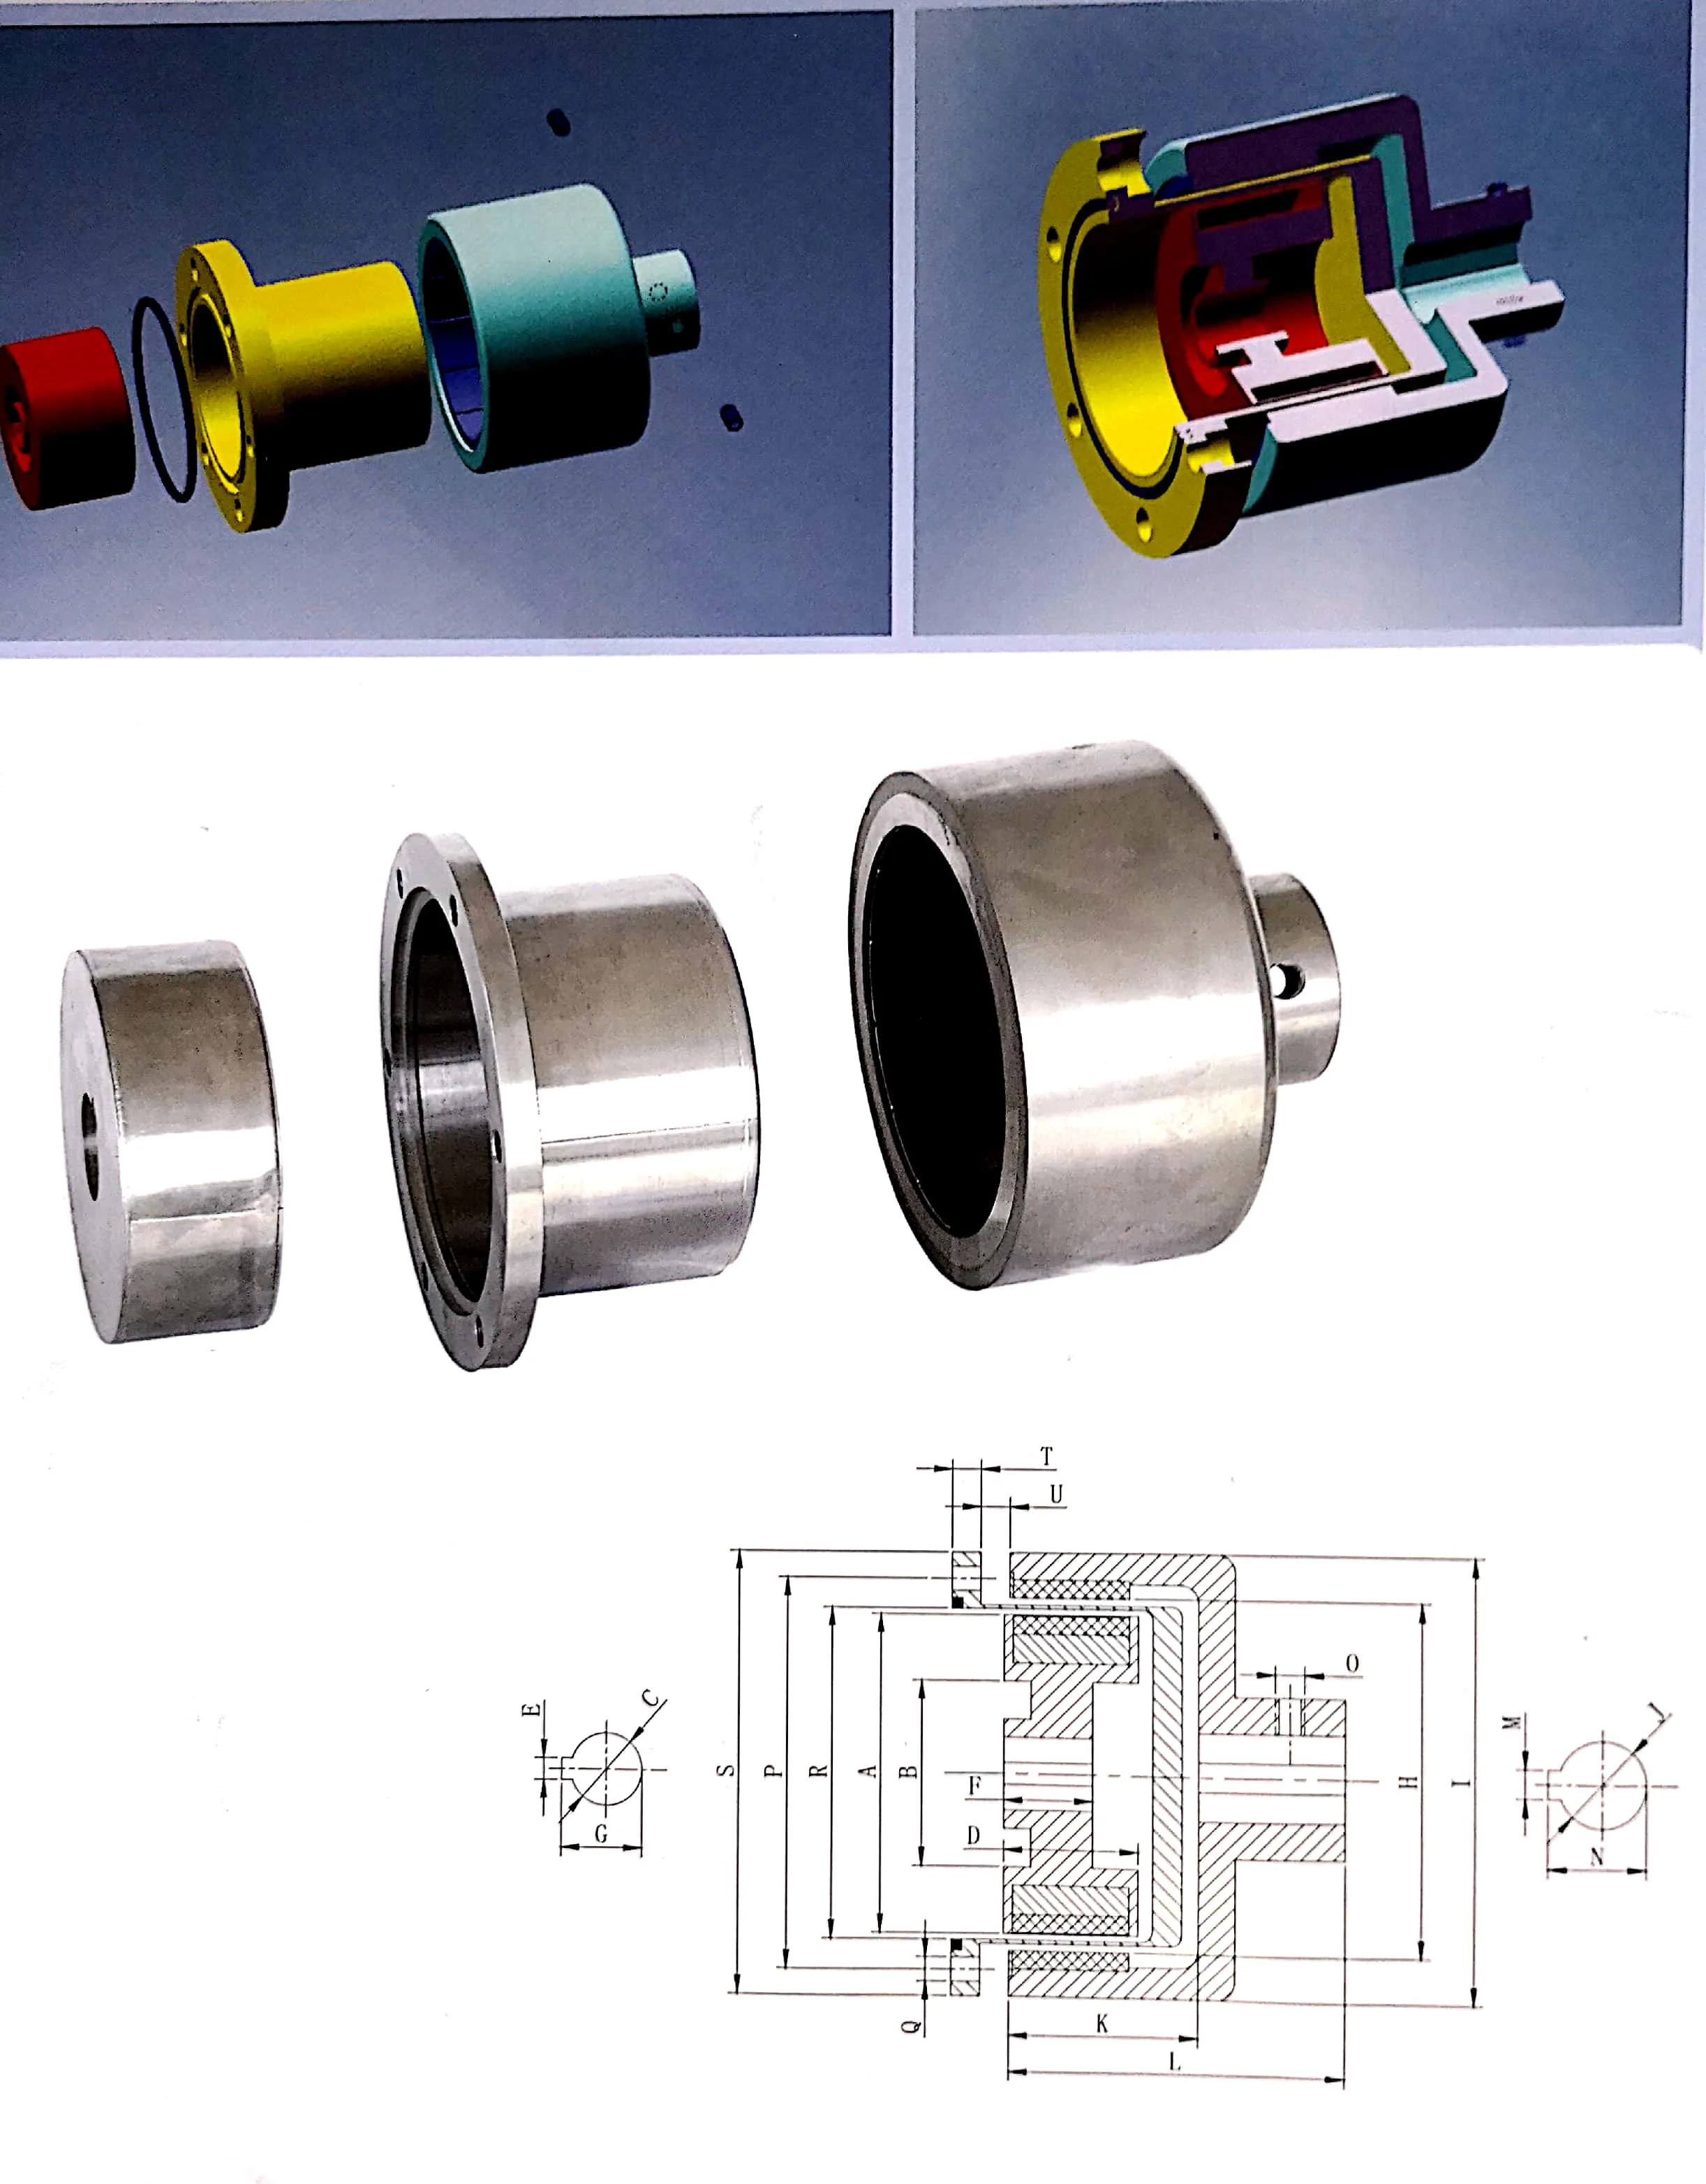 应用 磁轴联轴器最常用于液体泵和螺旋桨系统,因为一个静态的,物理